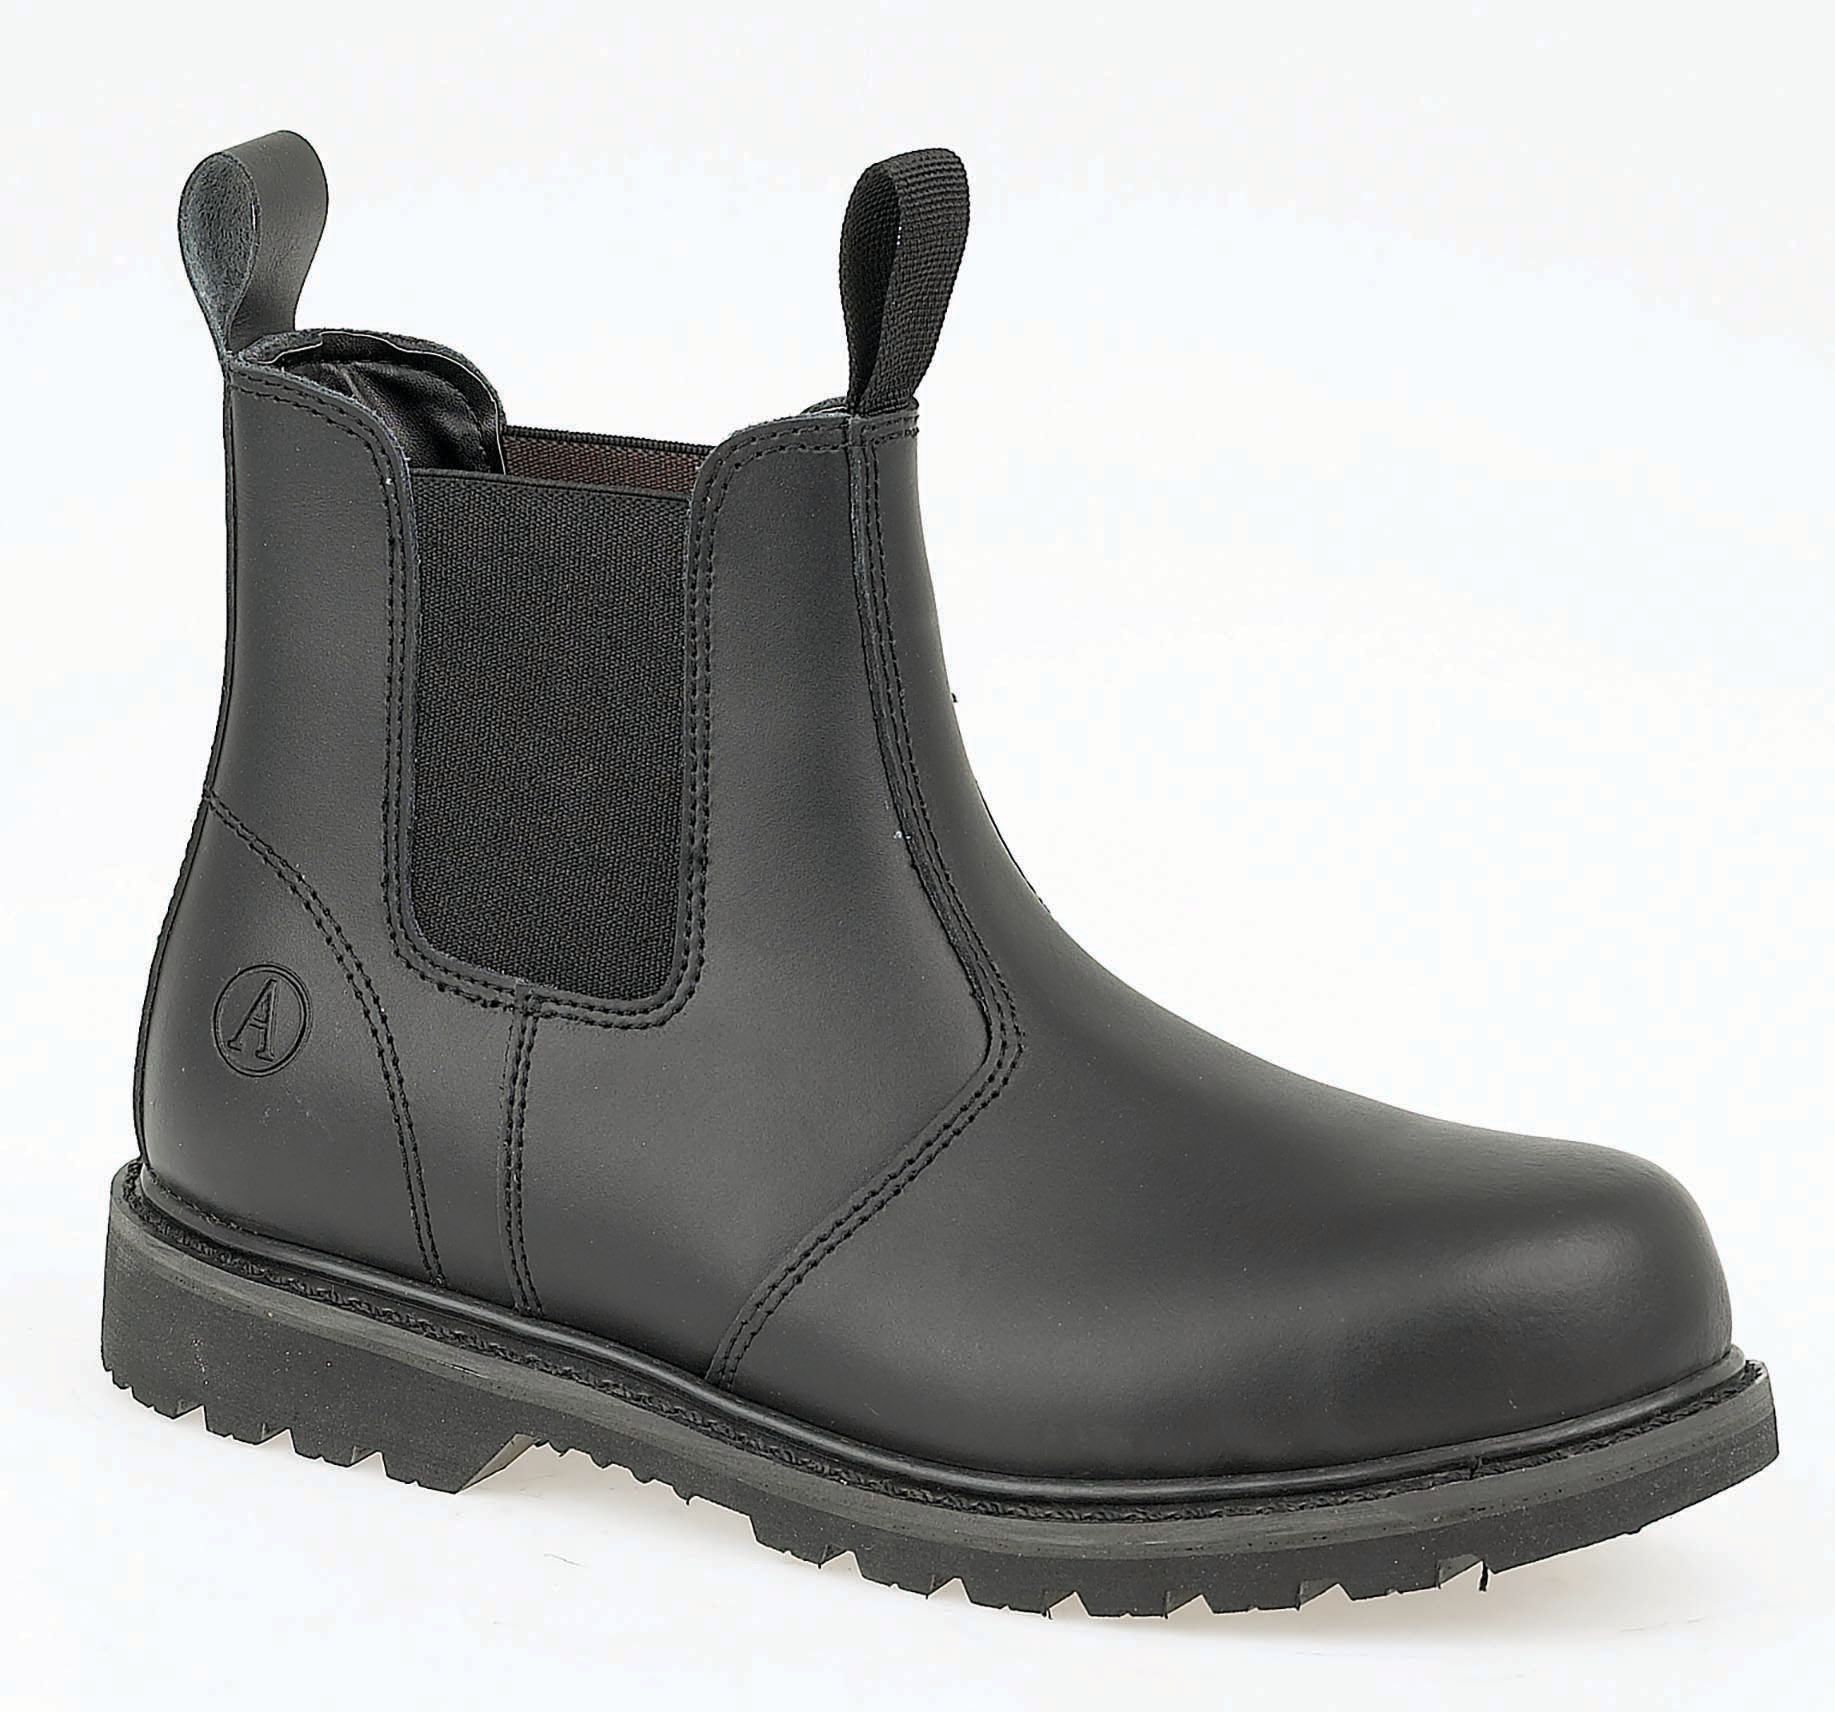 Image of Amblers Safety FS5 Dealer Safety Boot - Black Size 10